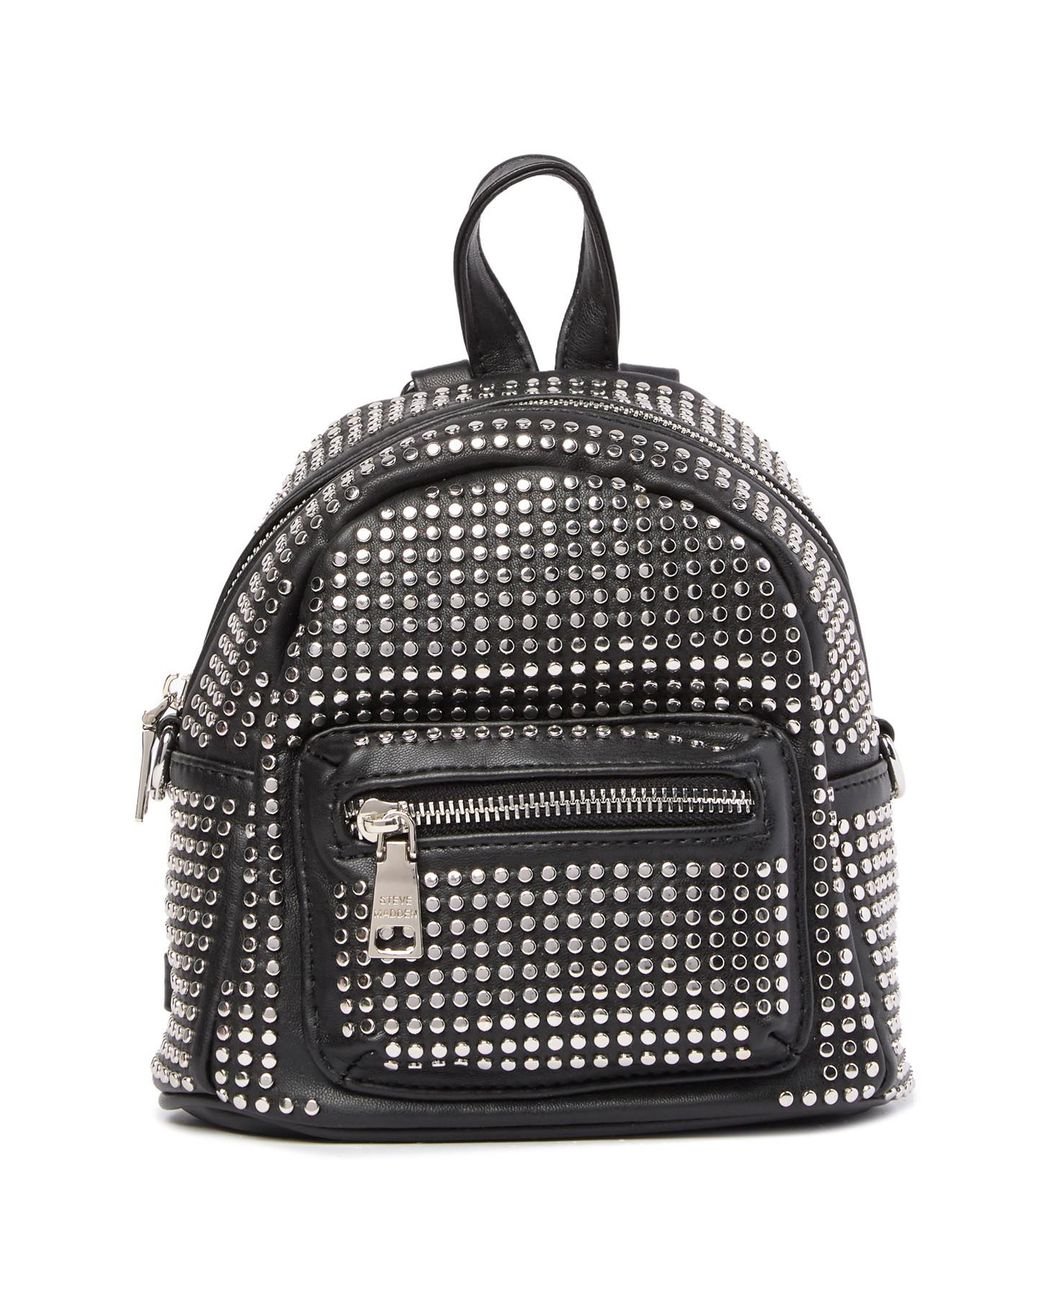 Steve Madden Pin Studded Mini Backpack in Black | Lyst